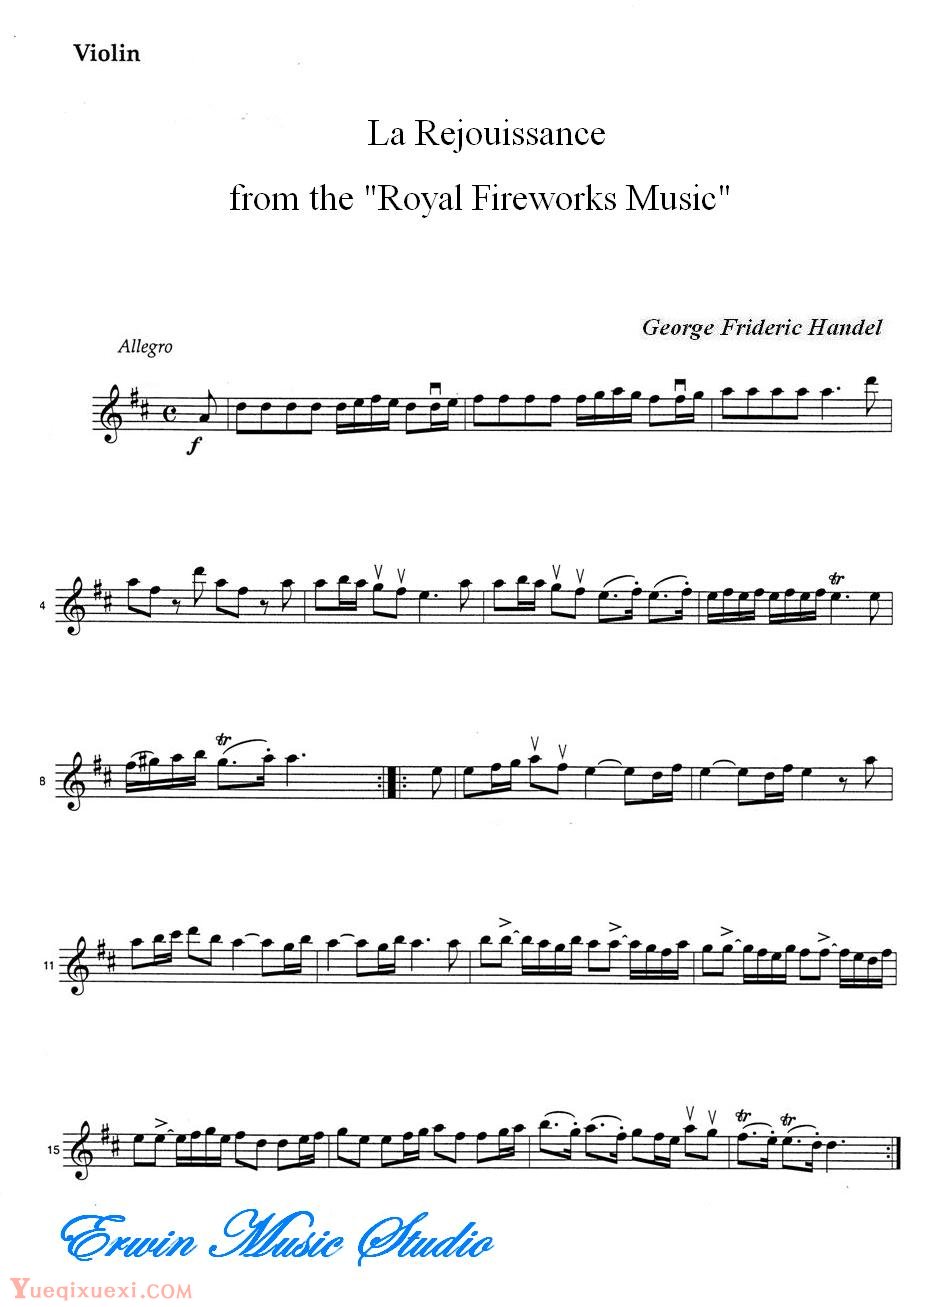 乔治弗里德里克亨德尔-欢乐庆祝时刻 弦乐三重奏分谱Violin  George Frideric Handel,  La Rejouissance from Royal Fireworks Music